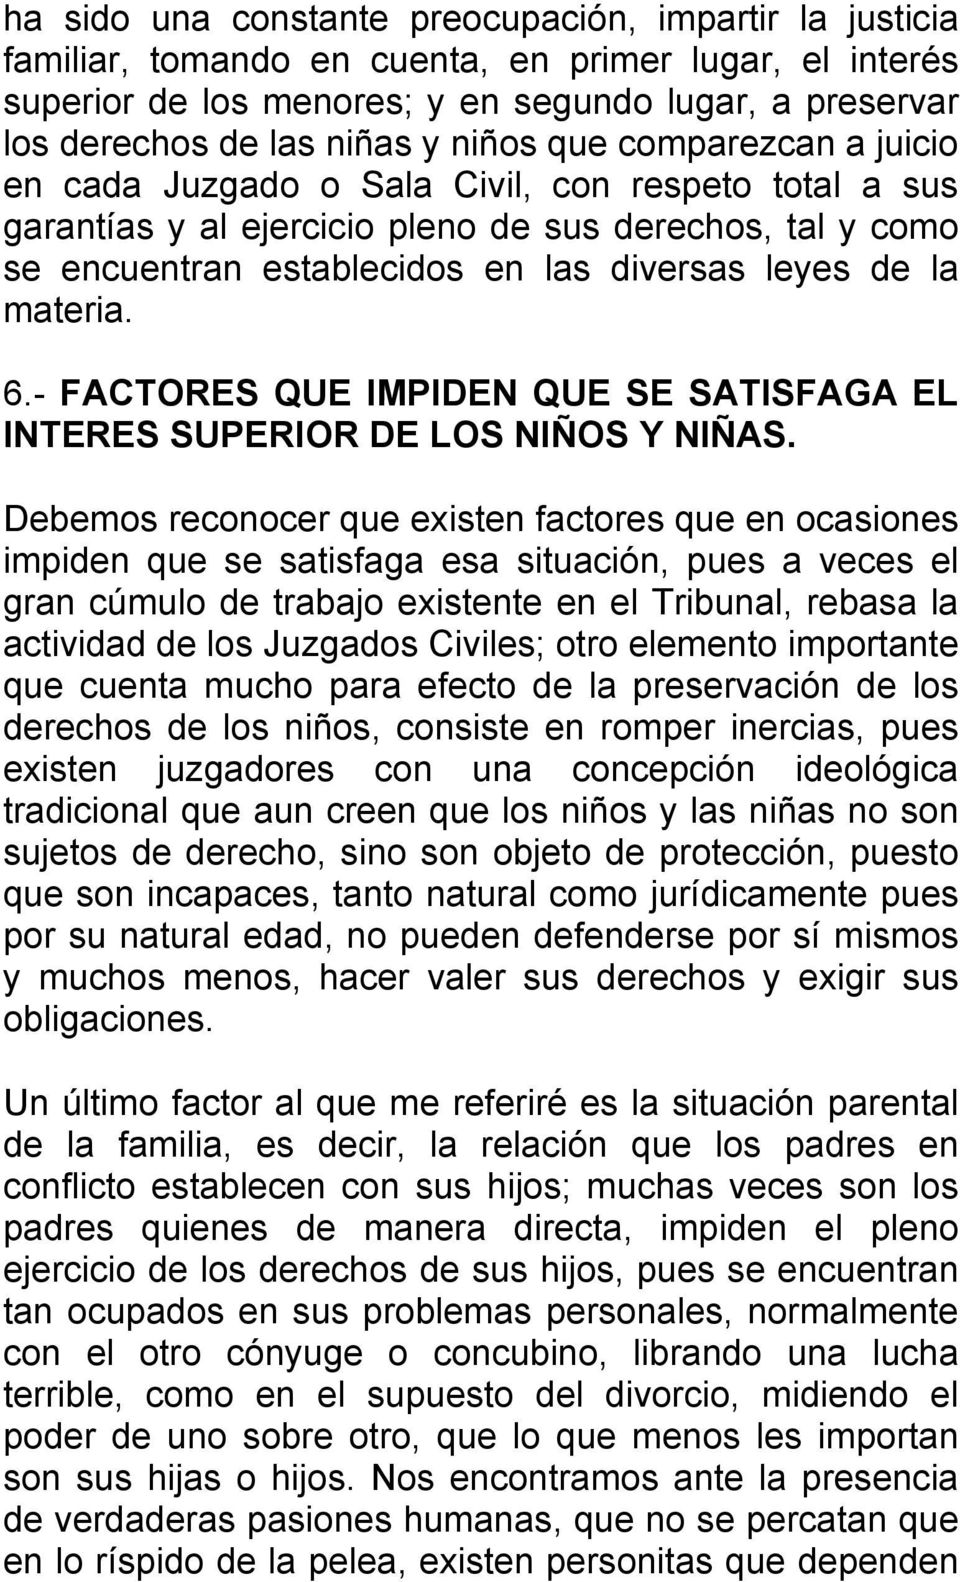 materia. 6.- FACTORES QUE IMPIDEN QUE SE SATISFAGA EL INTERES SUPERIOR DE LOS NIÑOS Y NIÑAS.